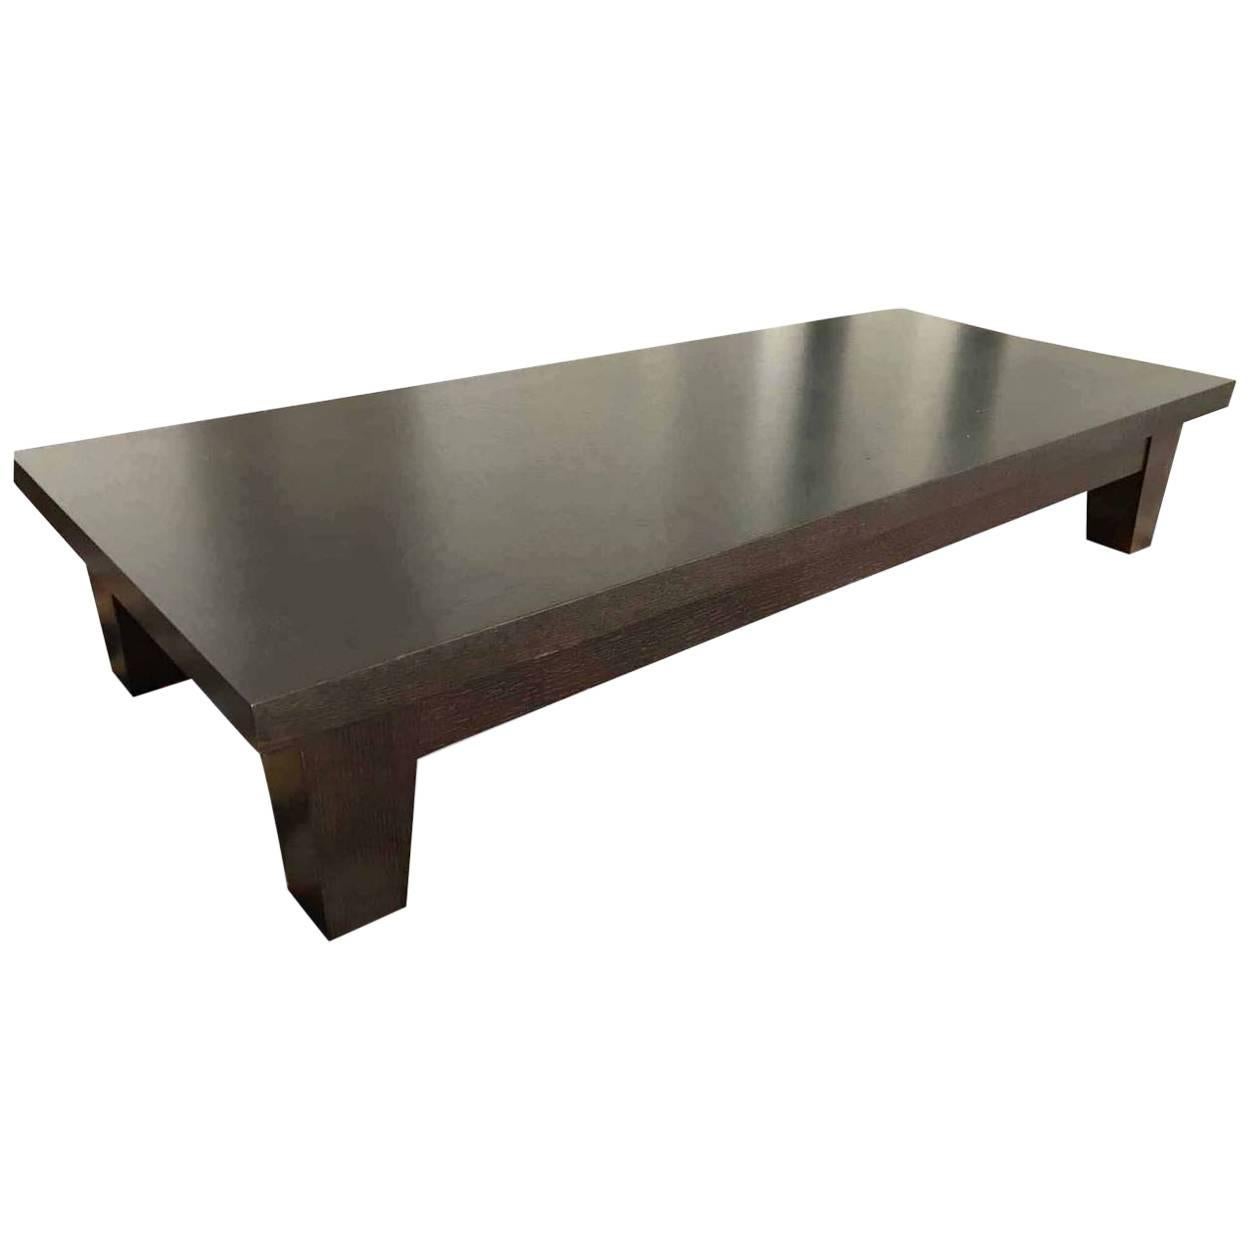 Sofa Table "Eduardo" by Manufacturer Promemoria in Massive Oak For Sale